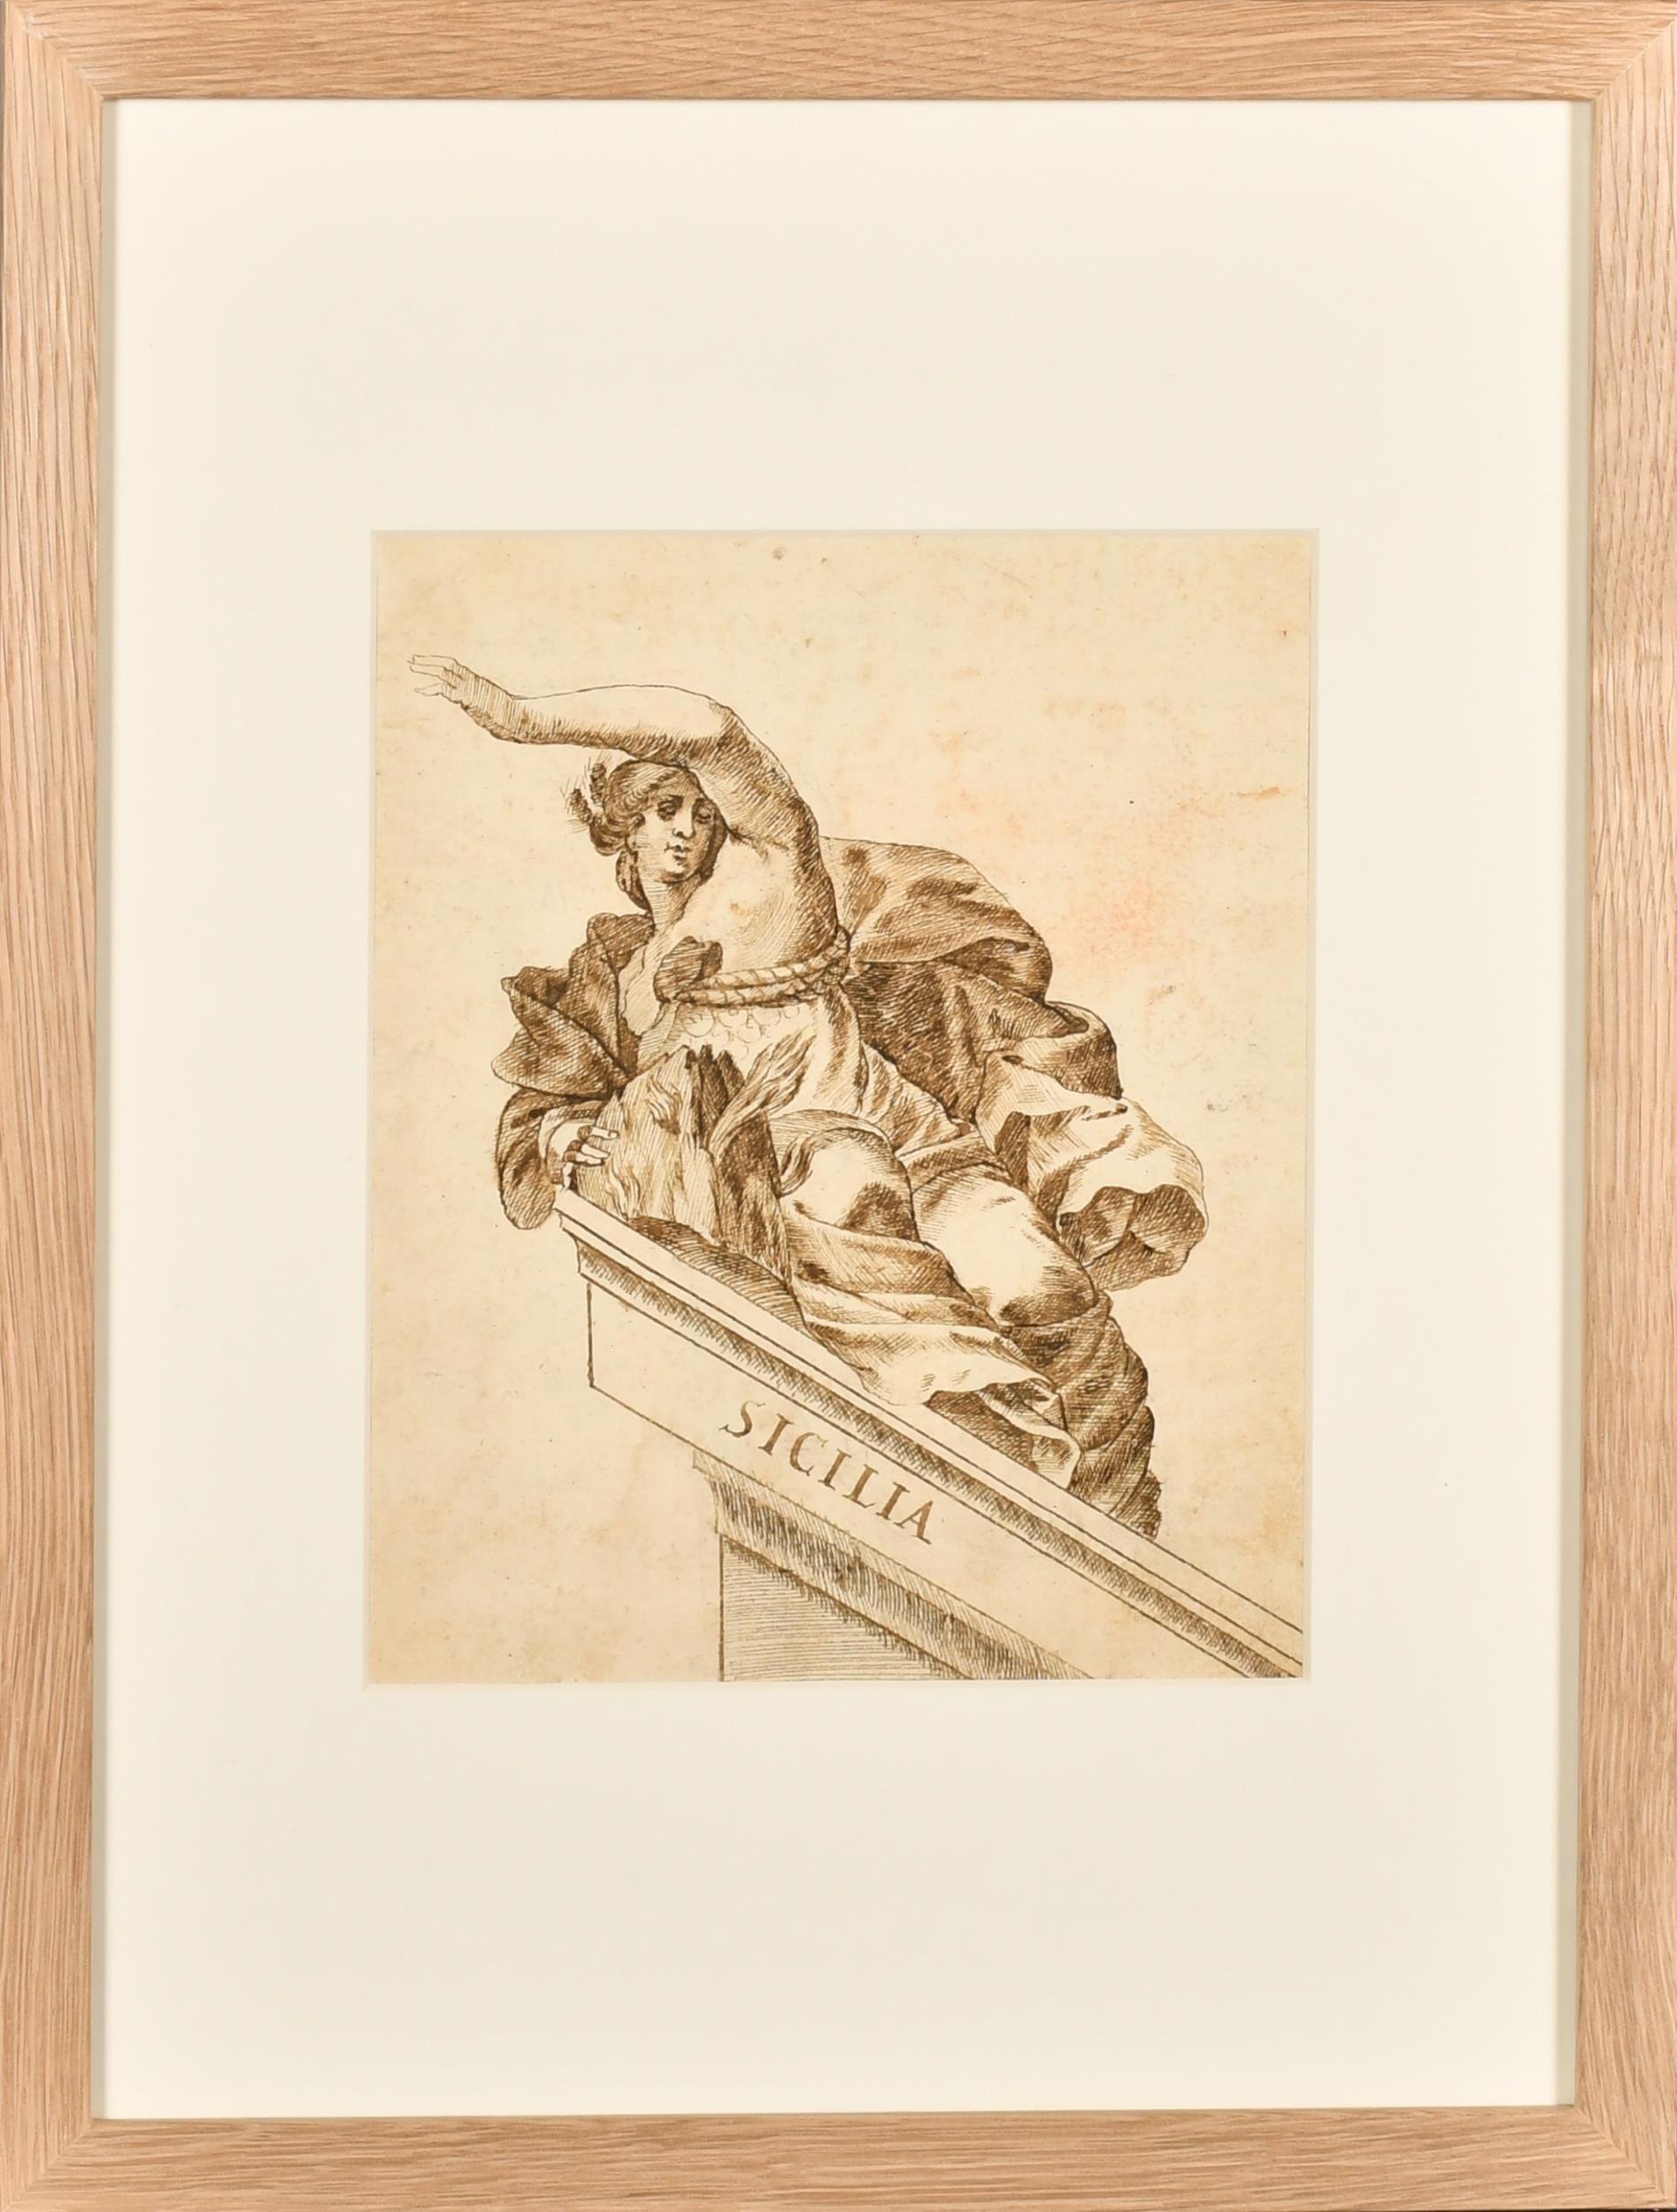 Très beau dessin à l'encre et au lavis de maître italien des années 1700, Allégorie romaine de la Sicile - Painting de 18thC Italian Old Master